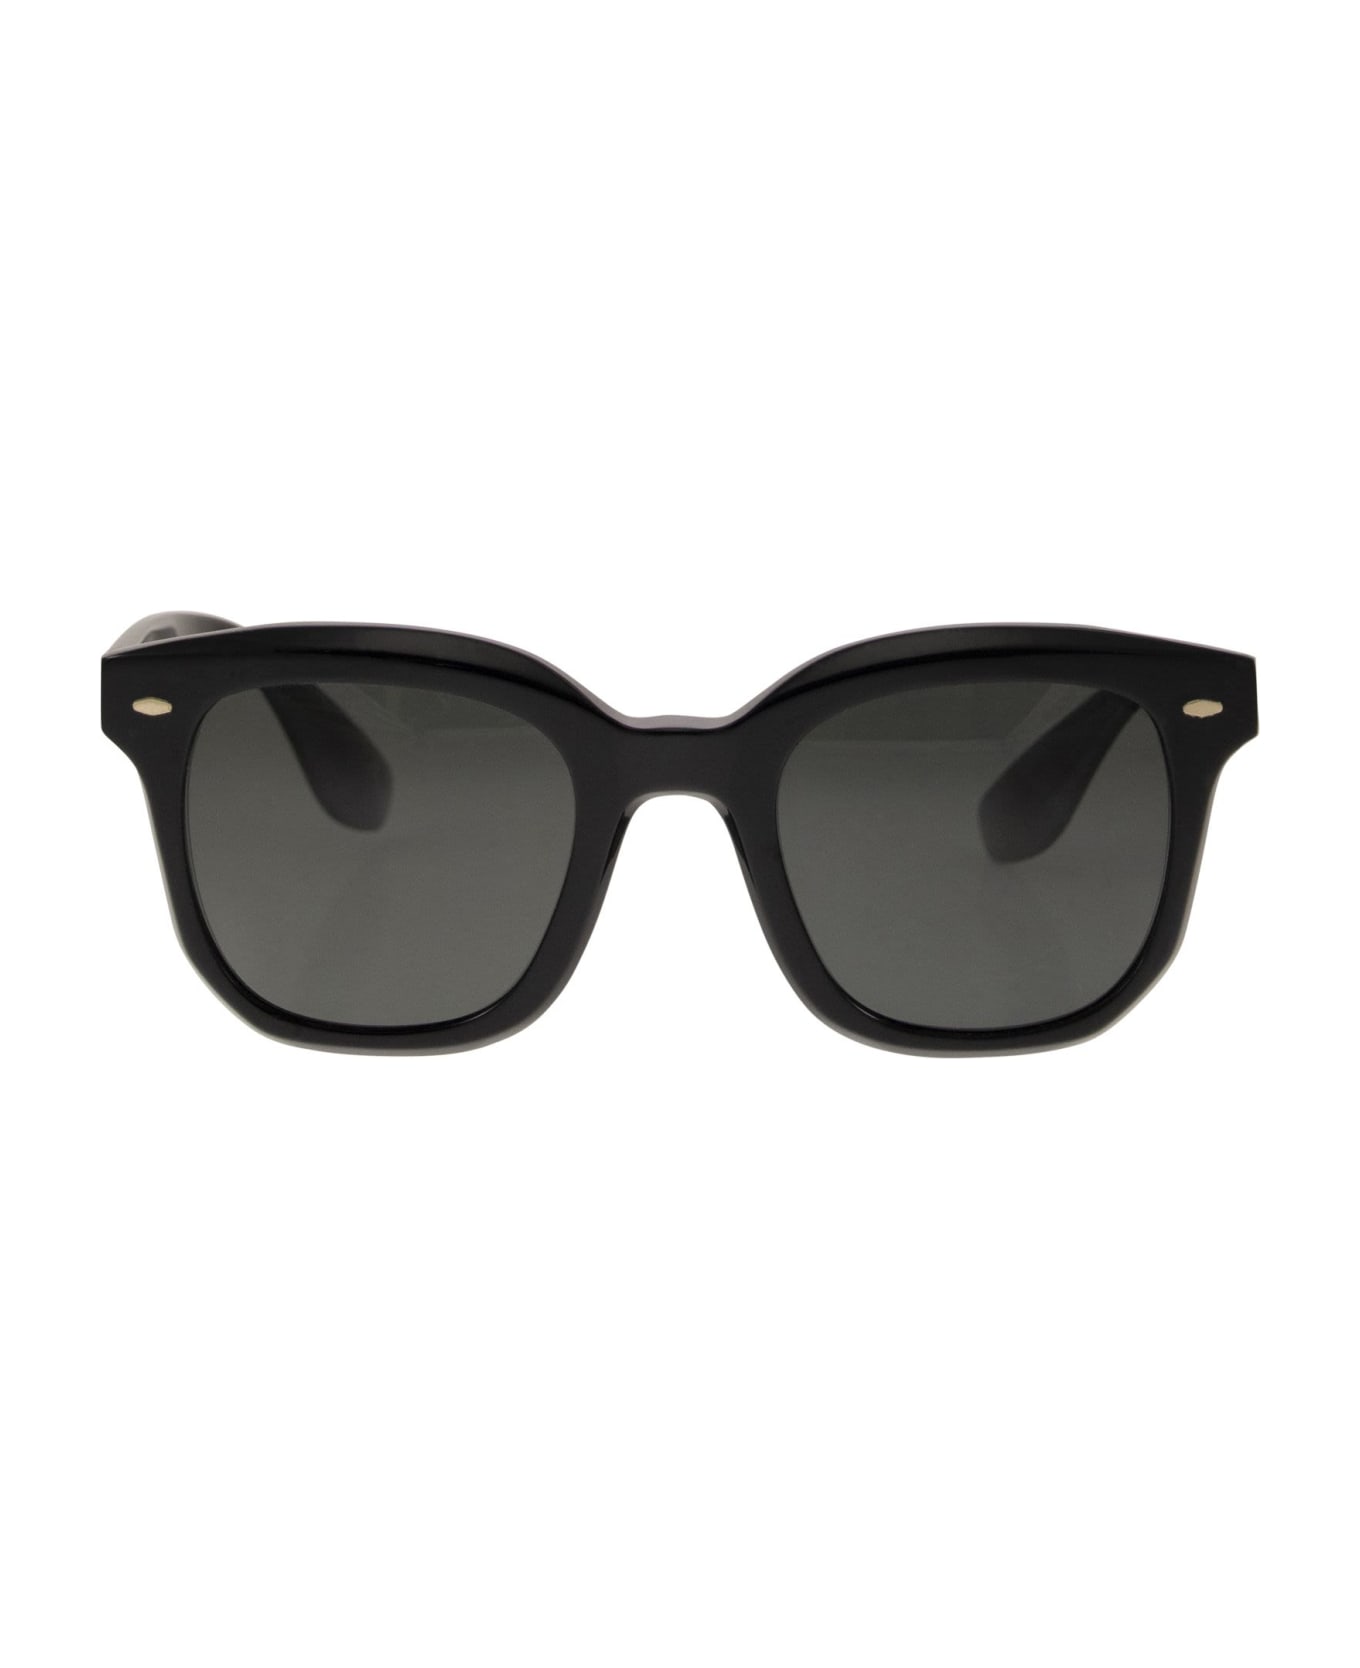 Brunello Cucinelli Acetate Filù Sunglasses With Classic Lenses - Black